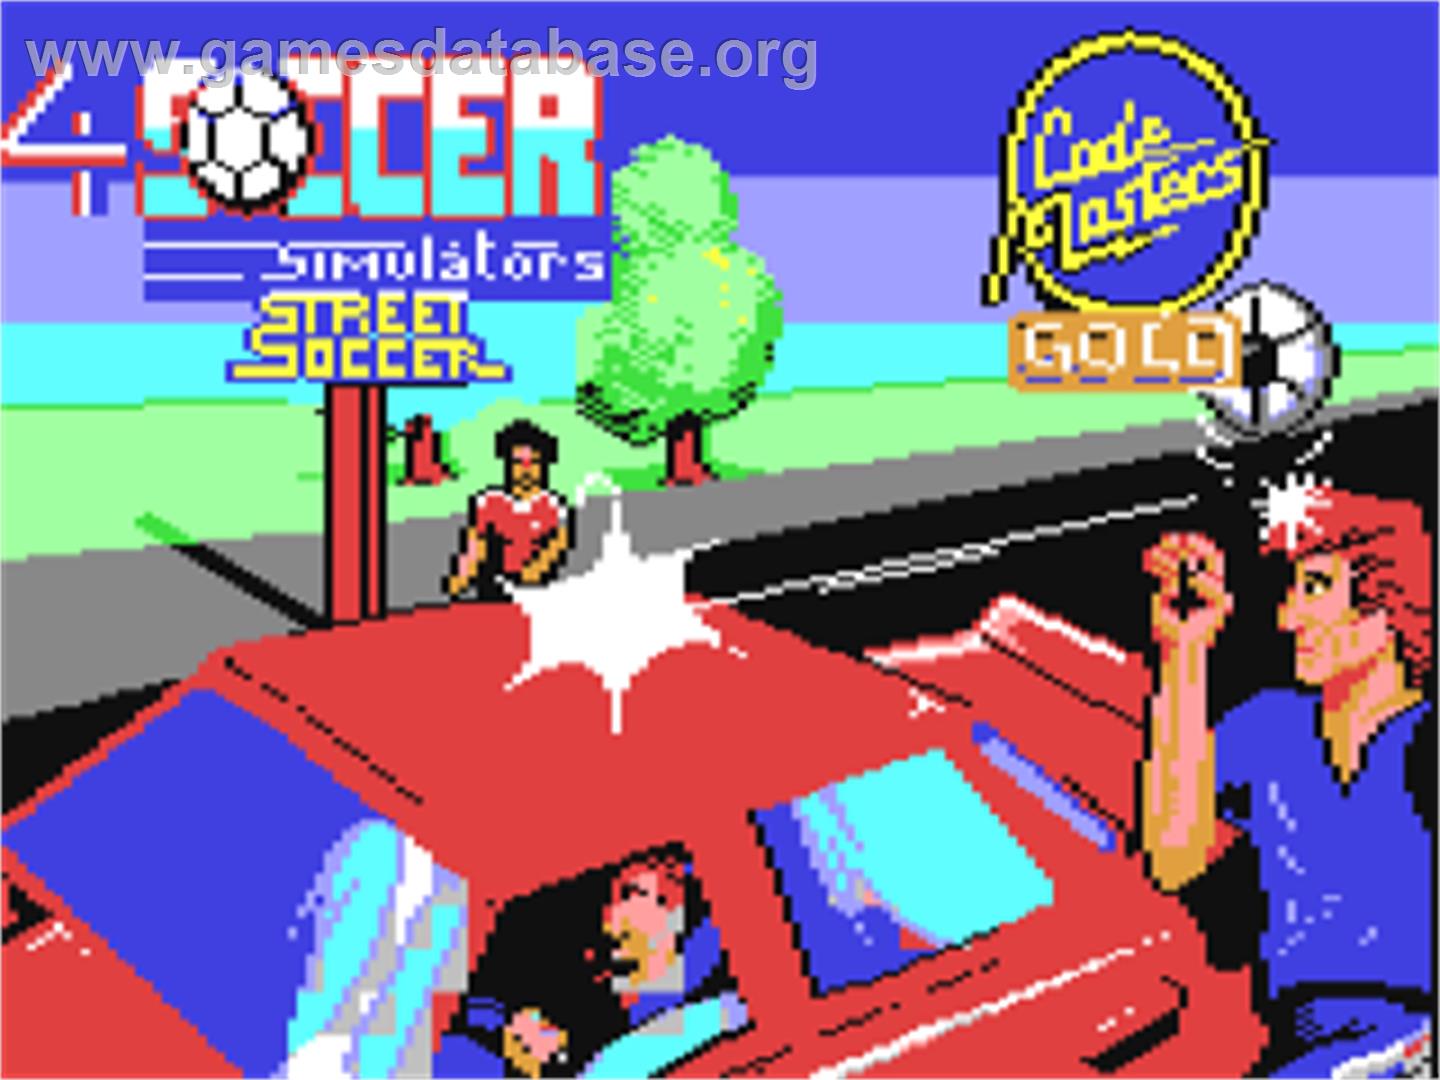 4 Soccer Simulators - Commodore 64 - Artwork - Title Screen